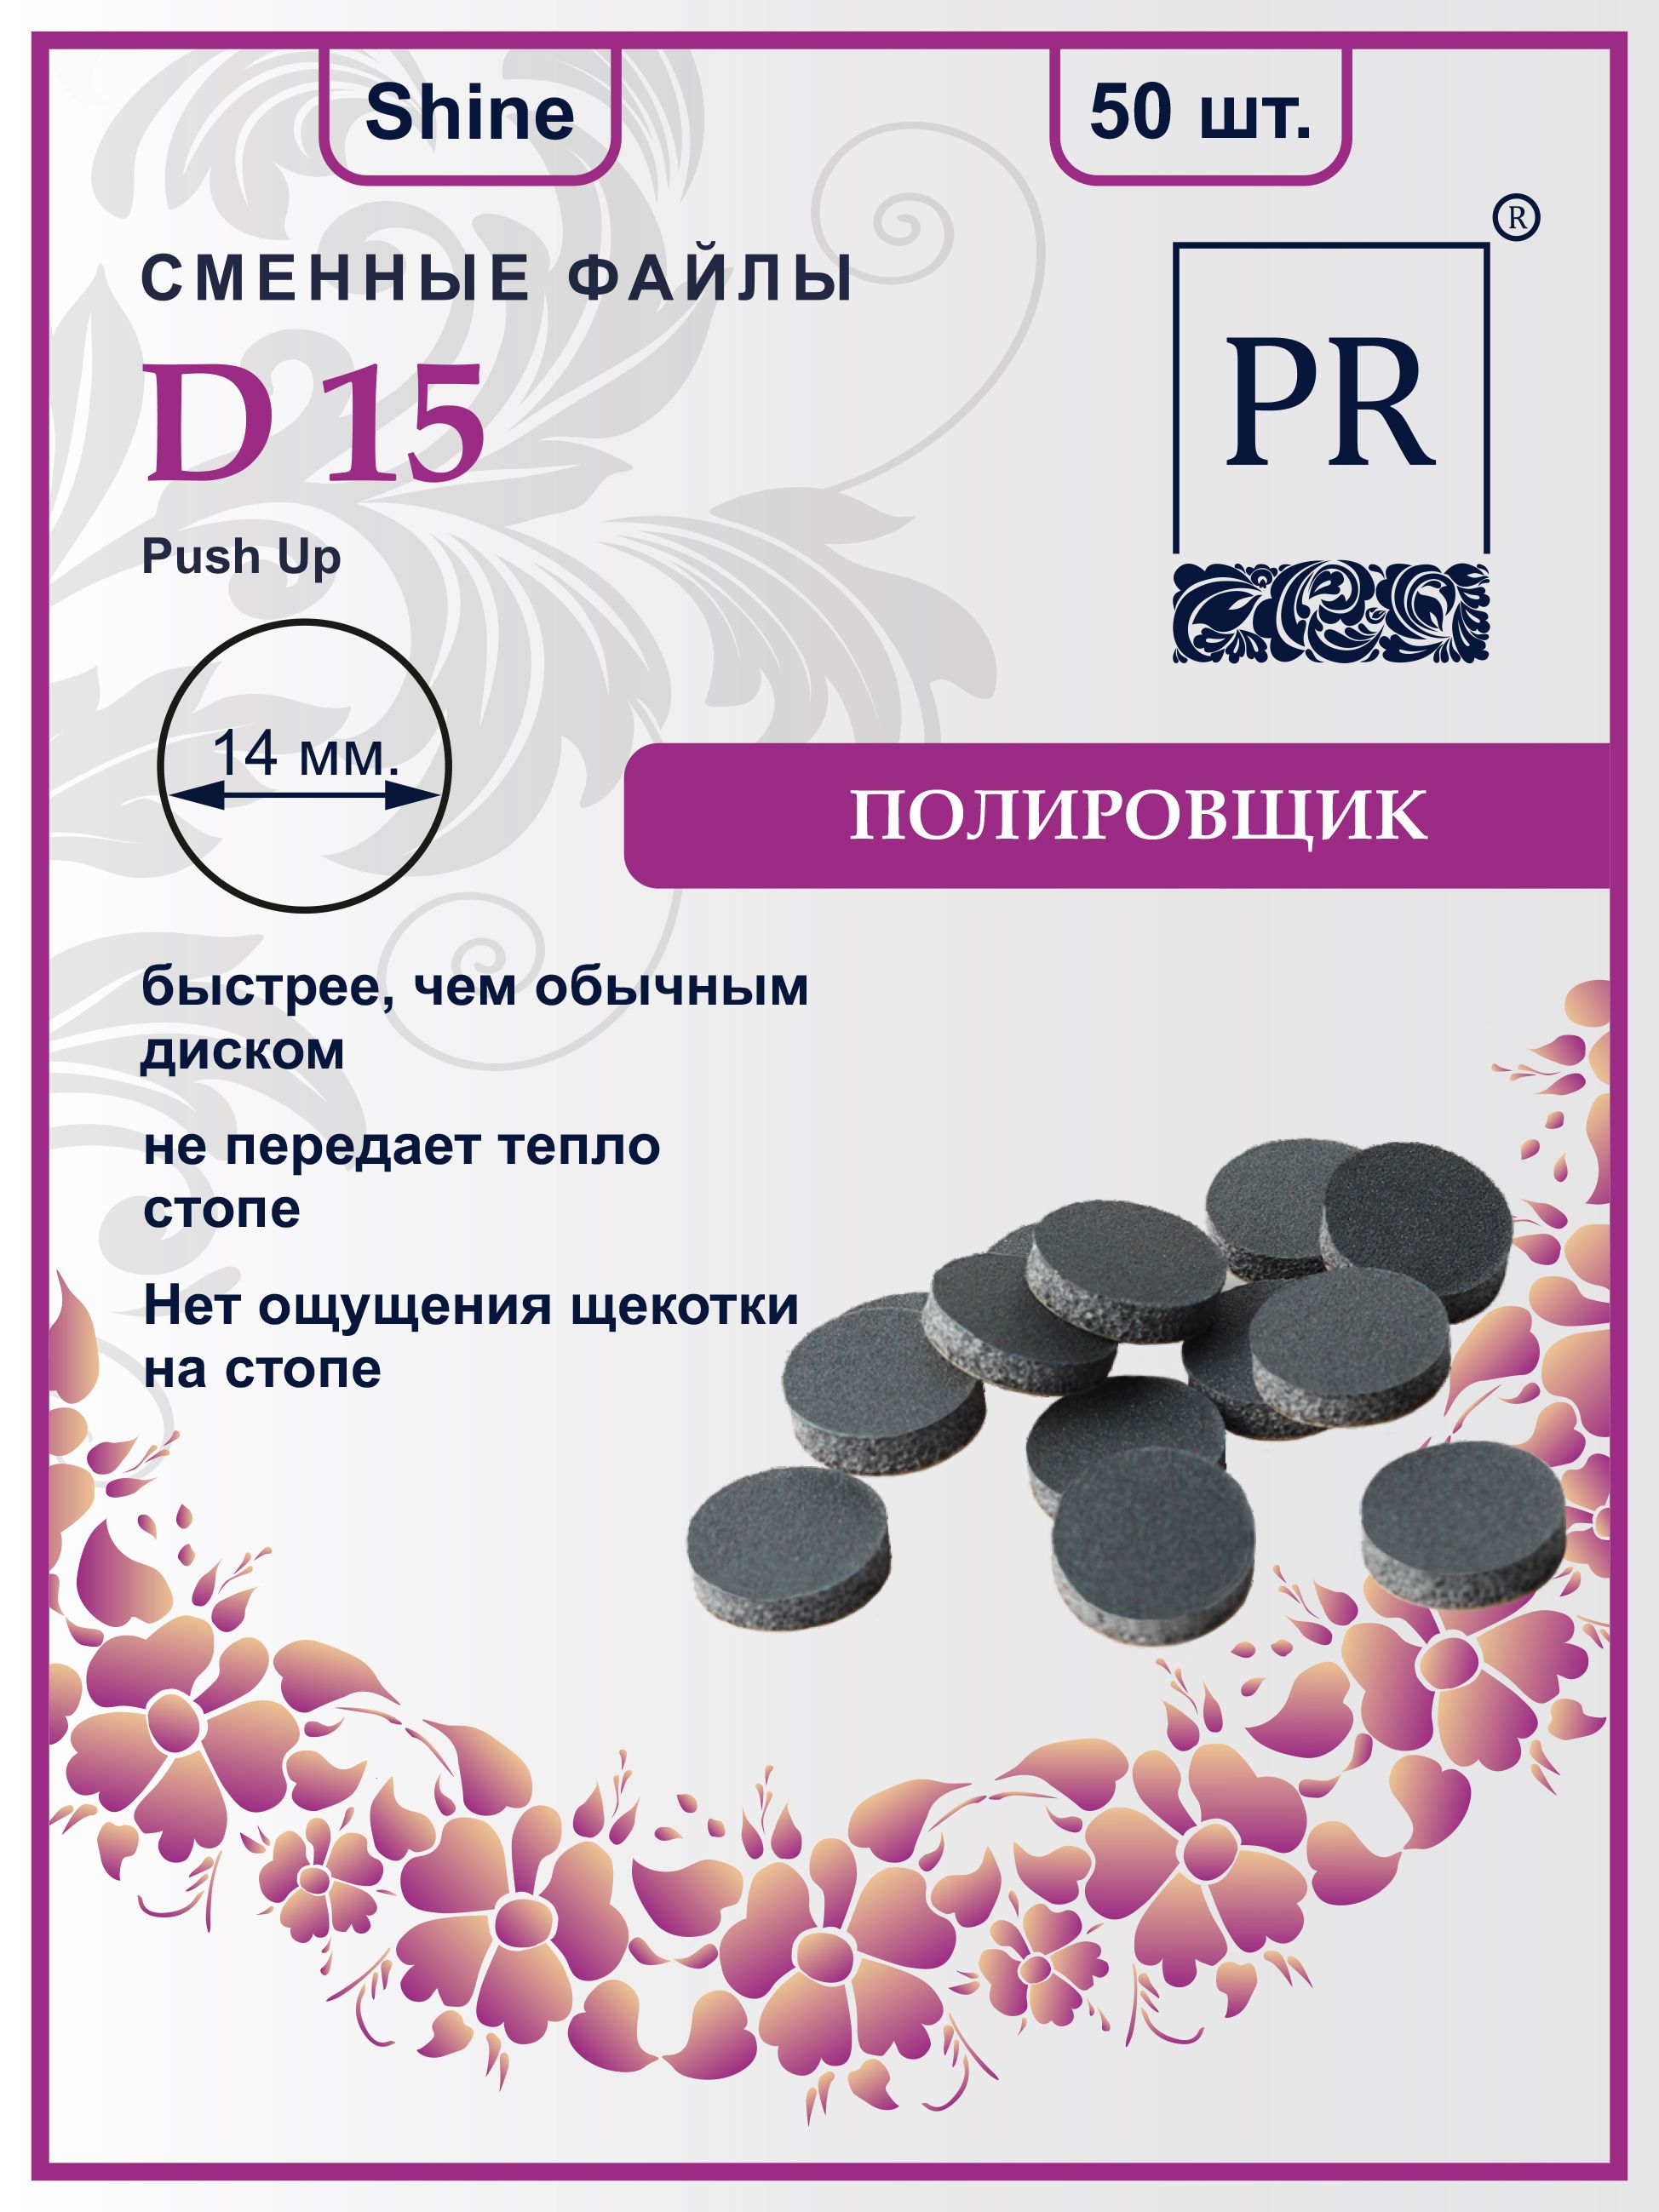 Сменные файлы Pilochki Russia диски Push Up Shine для полировки для диска S 50 штук свечи круг синий трактор 6 5 см в наборе 5 штук